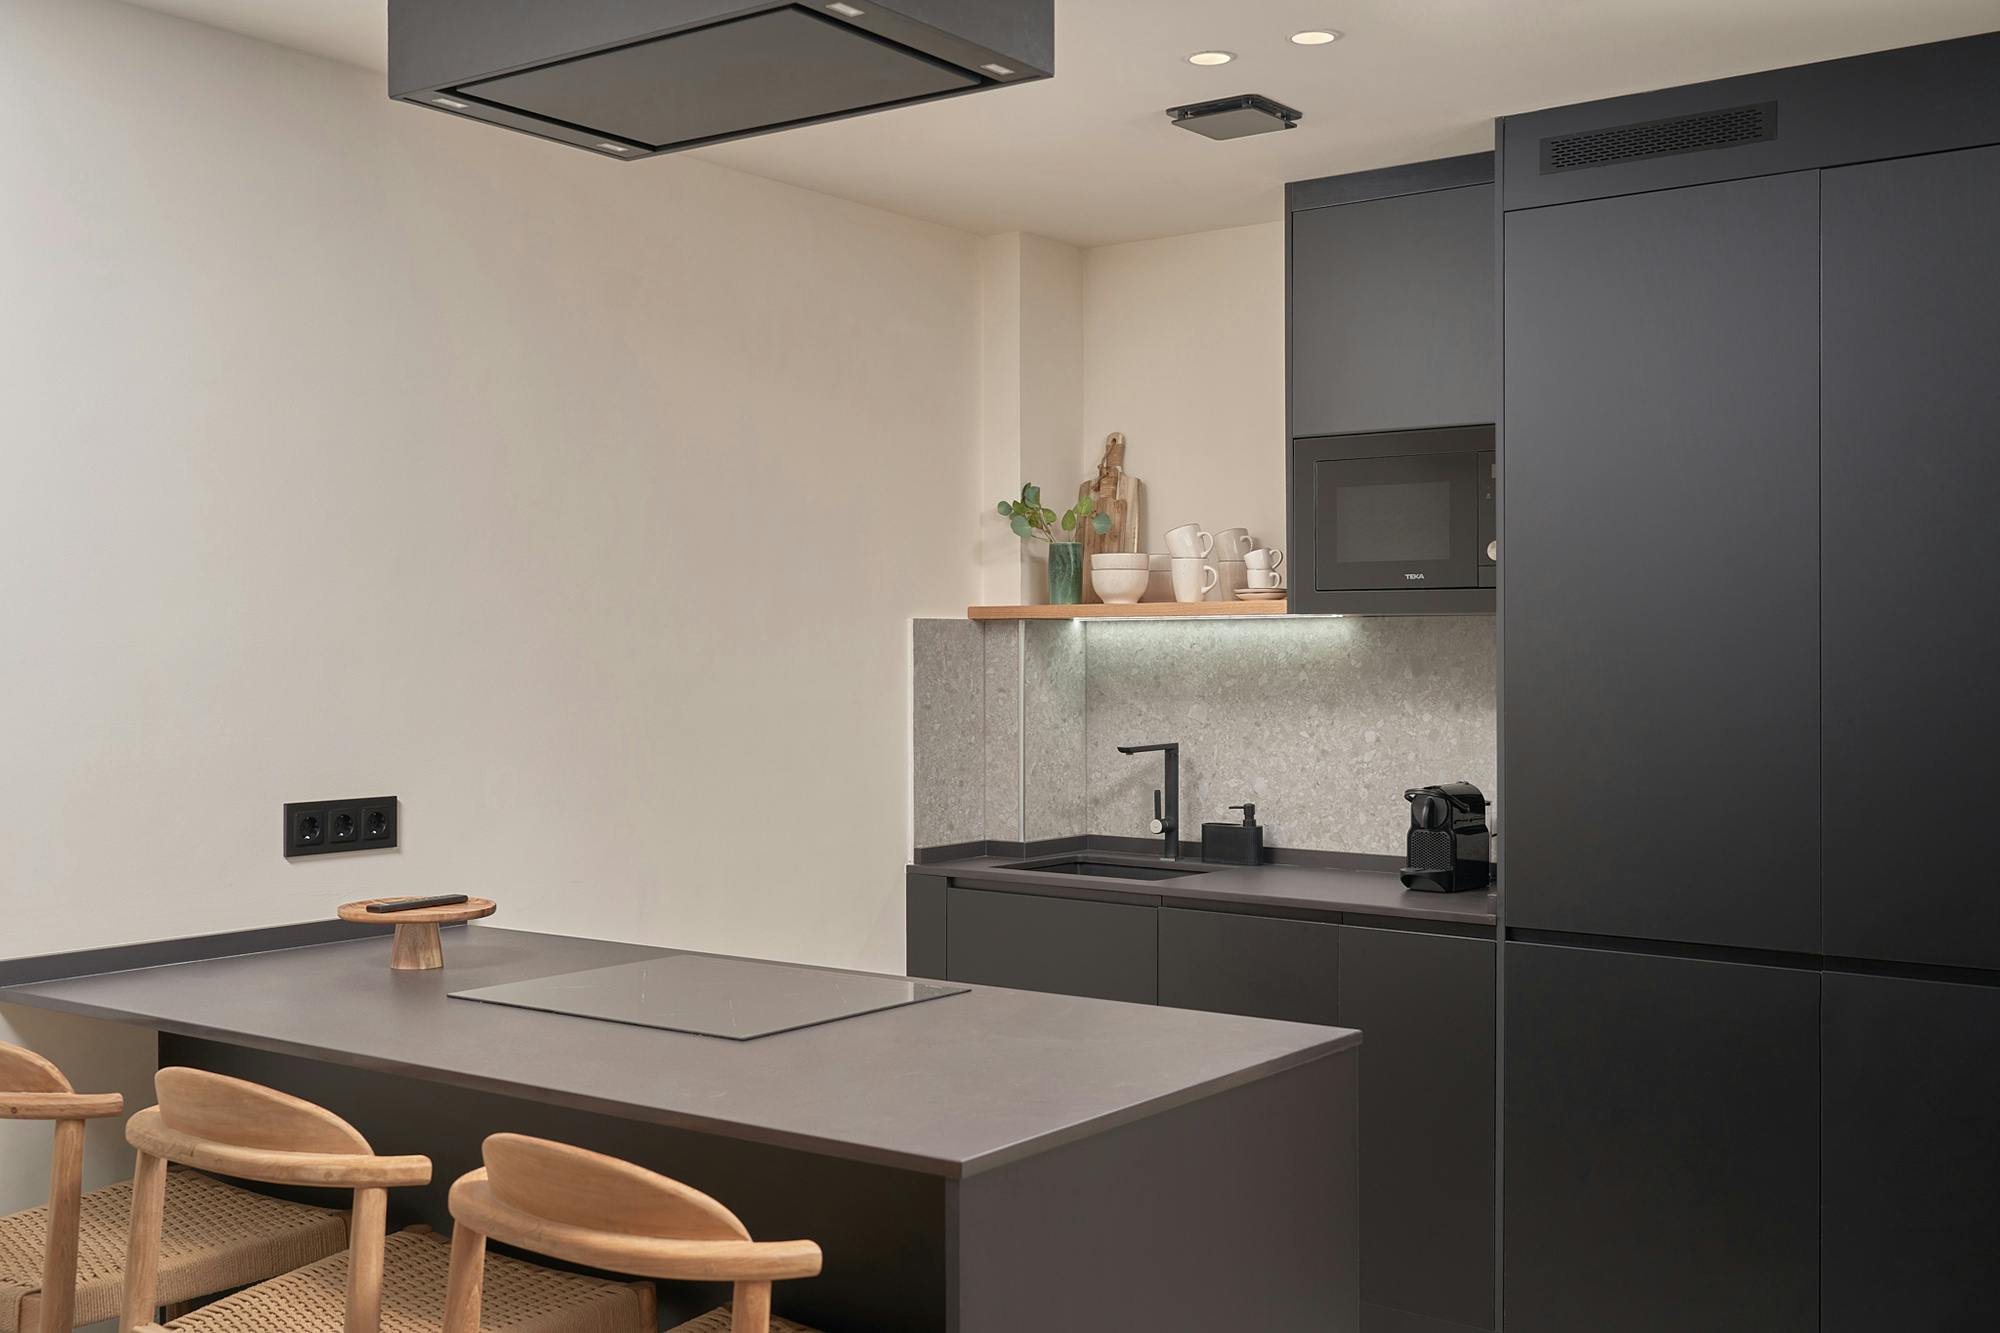 Bildnummer 35 des aktuellen Abschnitts von DKTN Sirius adds a welcoming touch to the kitchens of a residential development in Dubai von Cosentino Deutschland